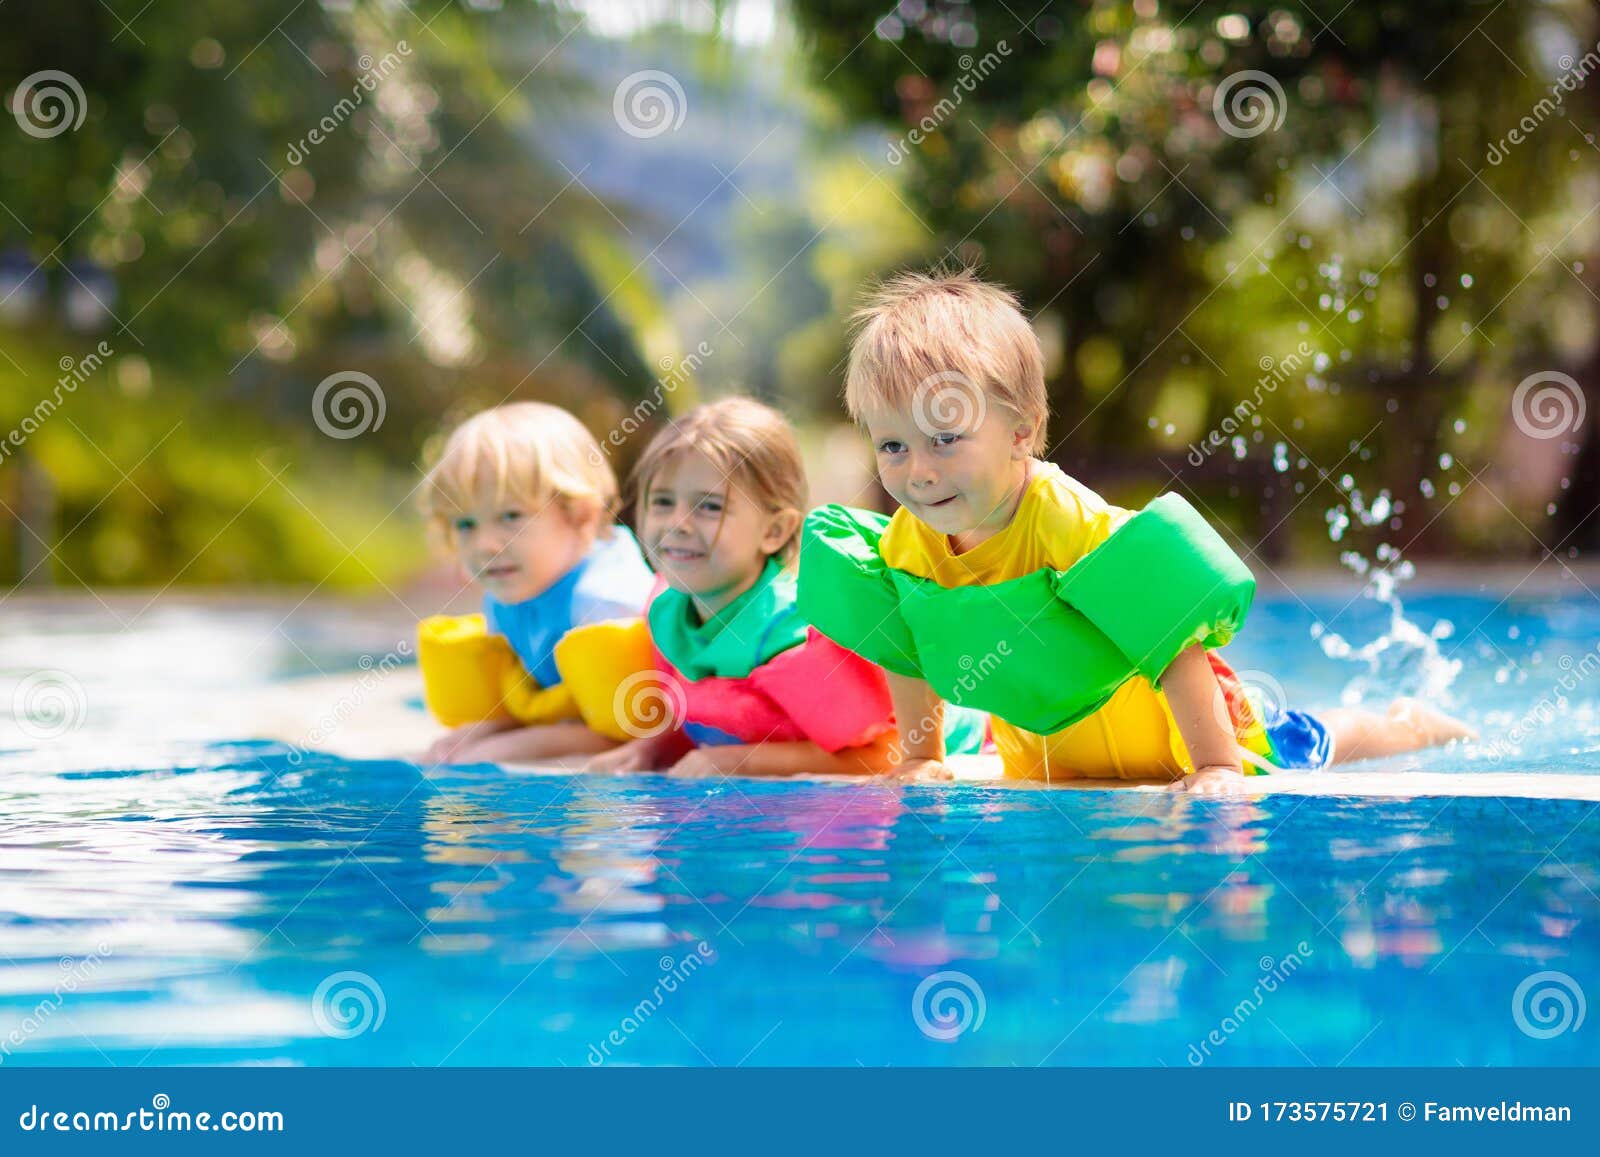 Kinderen Zwembad. Zwemvest Voor Kinderen Afbeelding - Image of familie, activiteit: 173575721